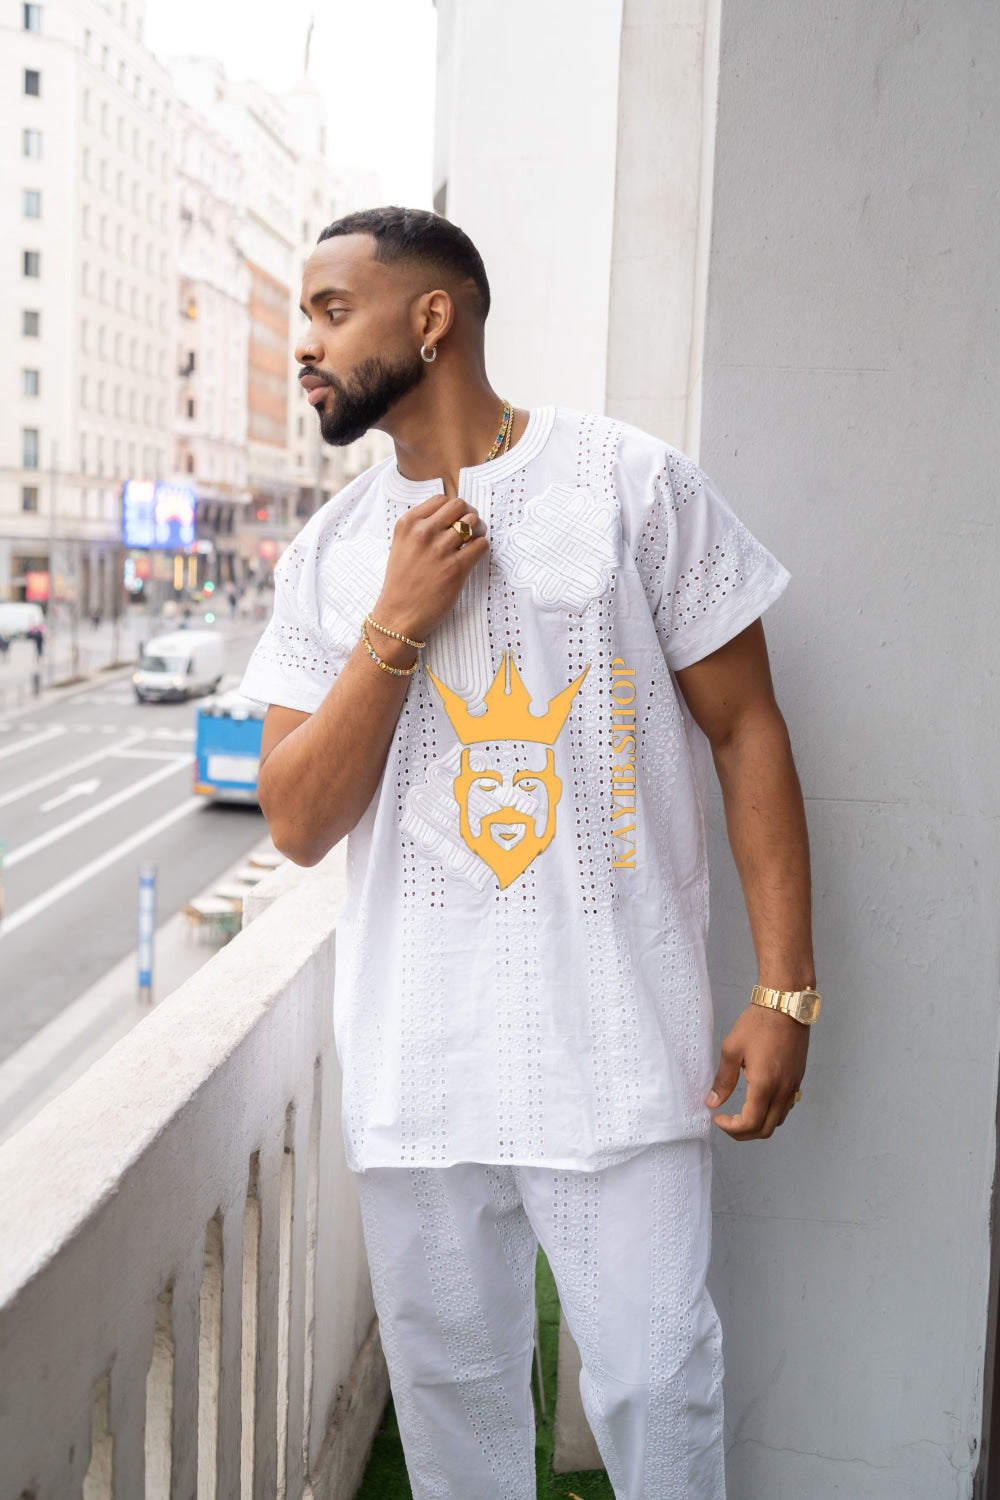 White Men's Lace Two-Piece Clothing: Sophisticated & Versatile Ensemble